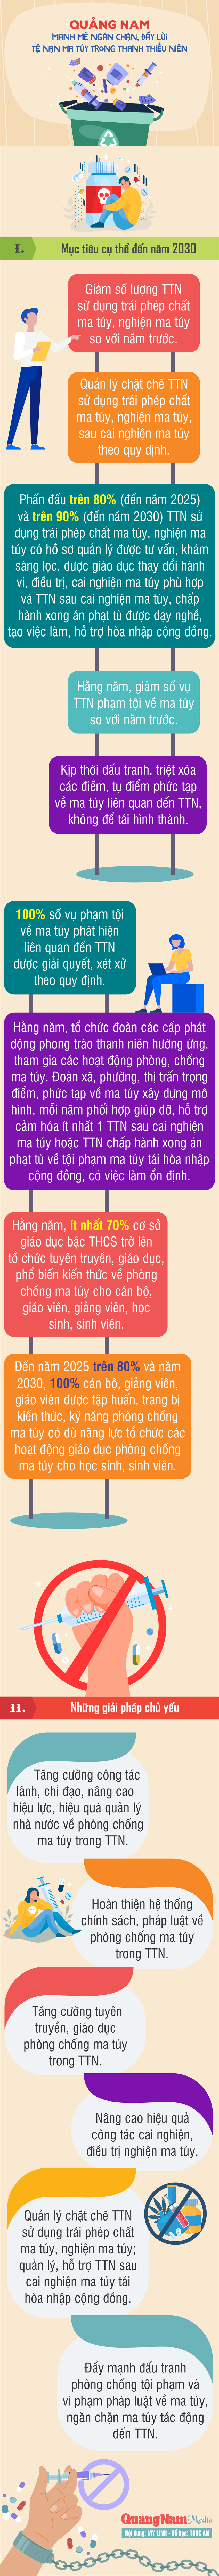 infographic-quang-nam-manh-me-ngan-chan-day-lui-te-nan-ma-tuy-trong-thanh-thieu-nien(1).png